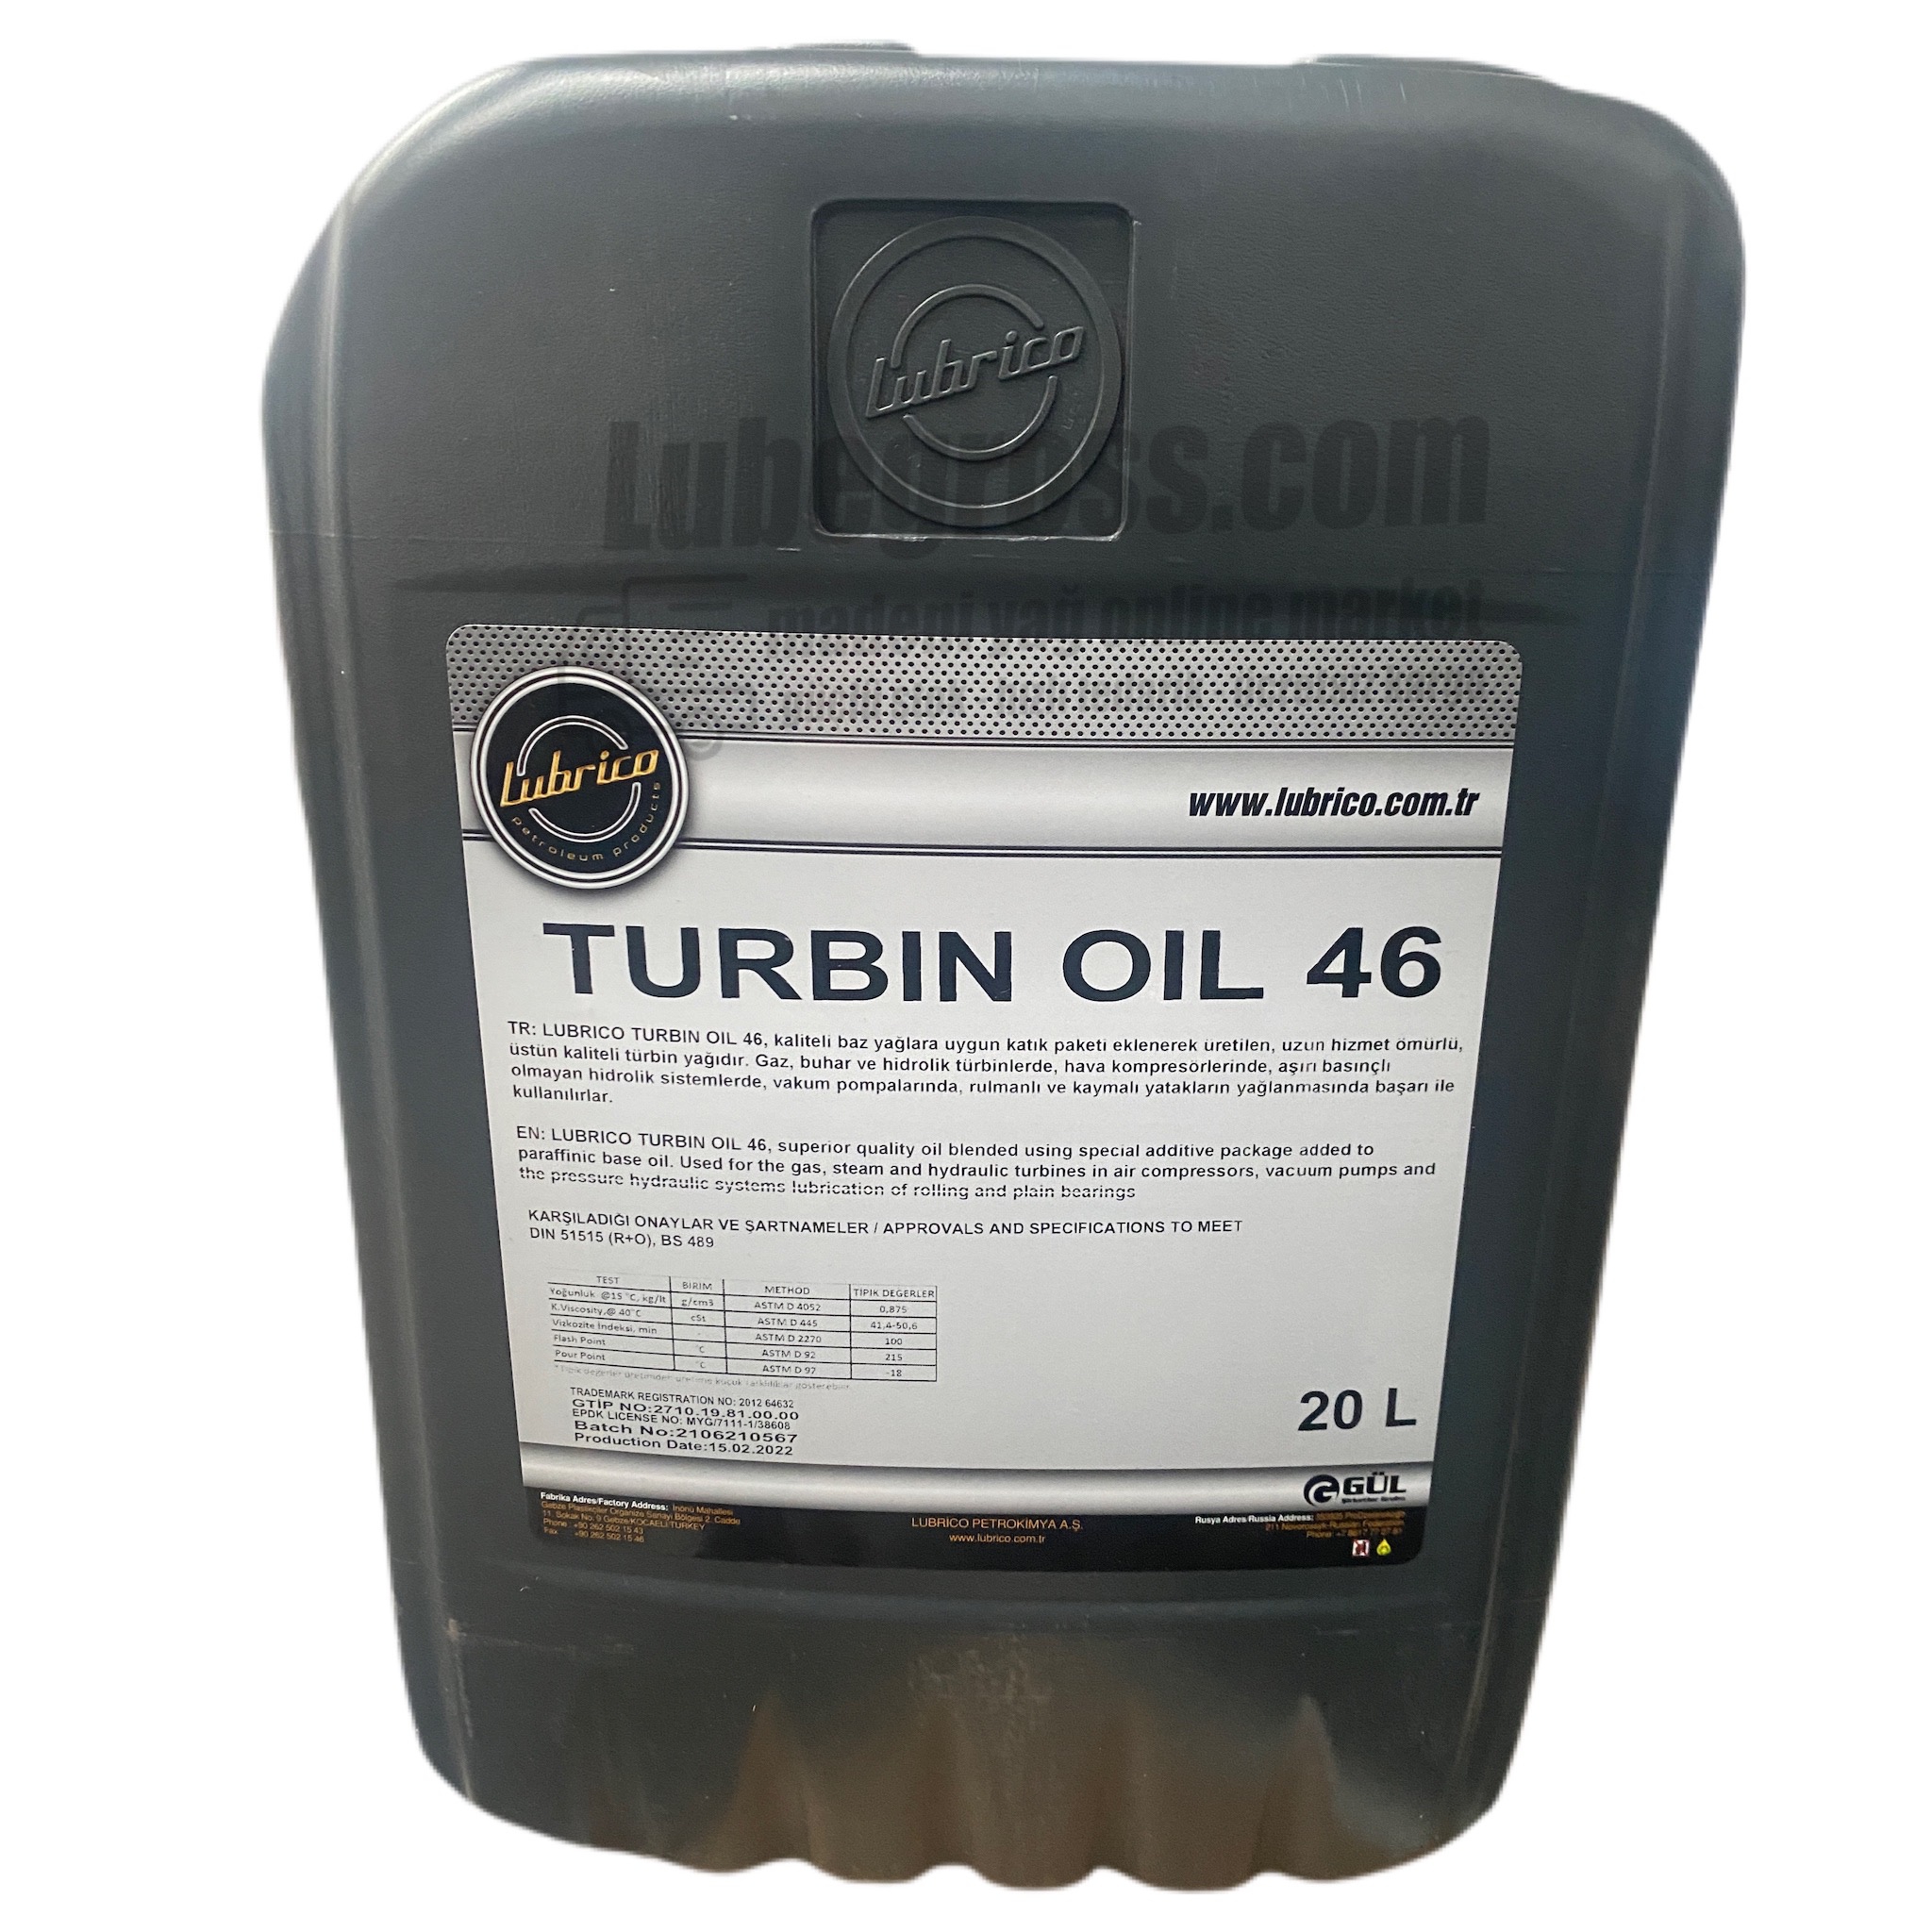 Lubrico Turbin Oil 46 20Lt.